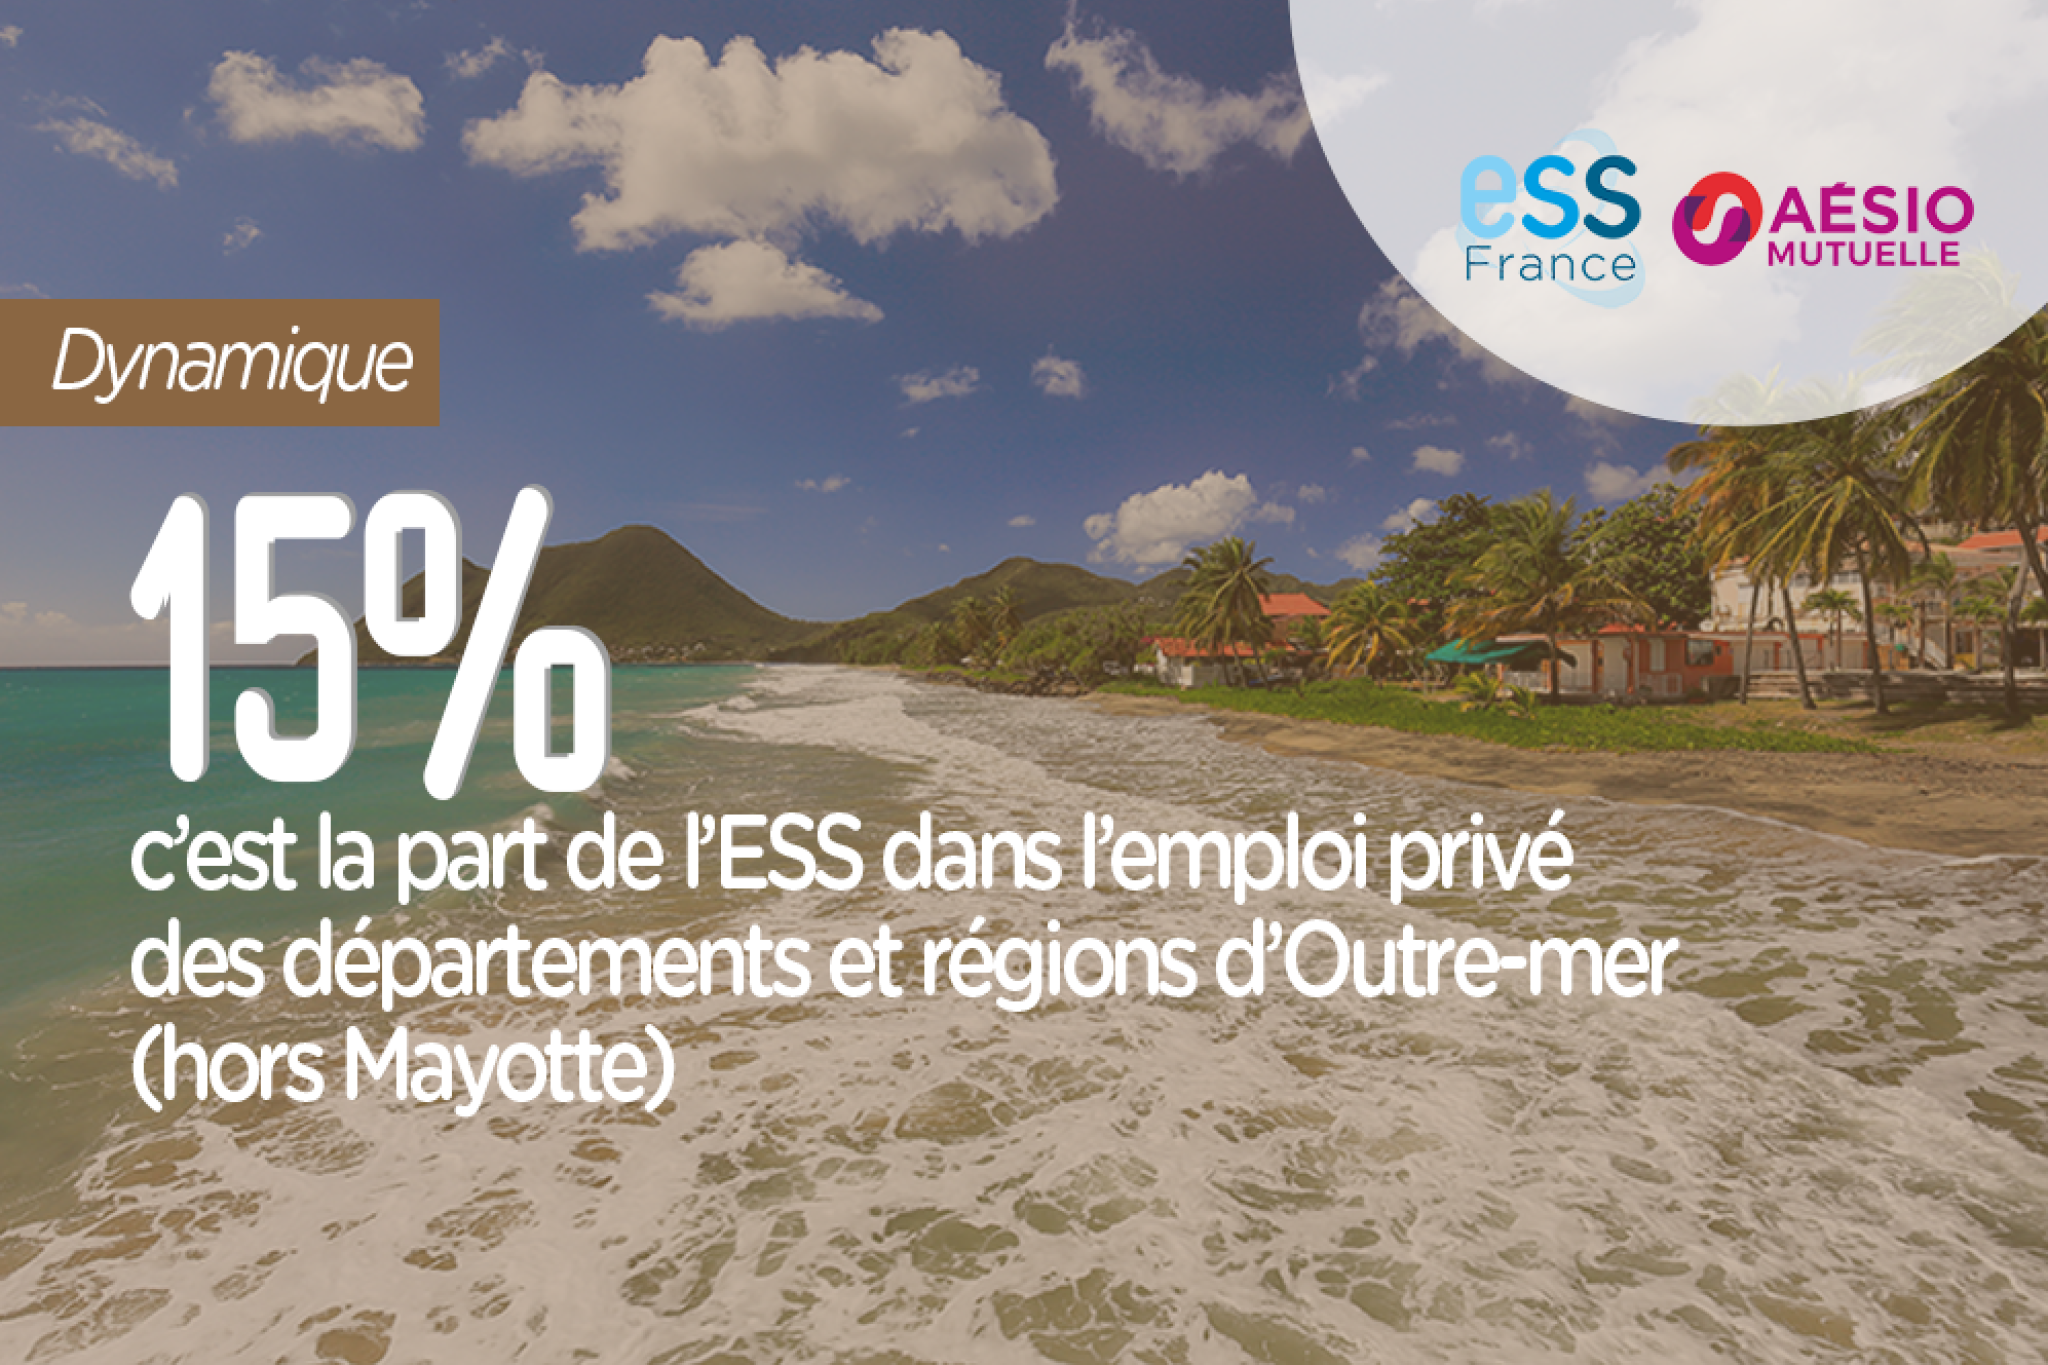 15%, c’est la part de l’ESS dans l’emploi privé des départements et régions d’Outre-mer (hors Mayotte) 